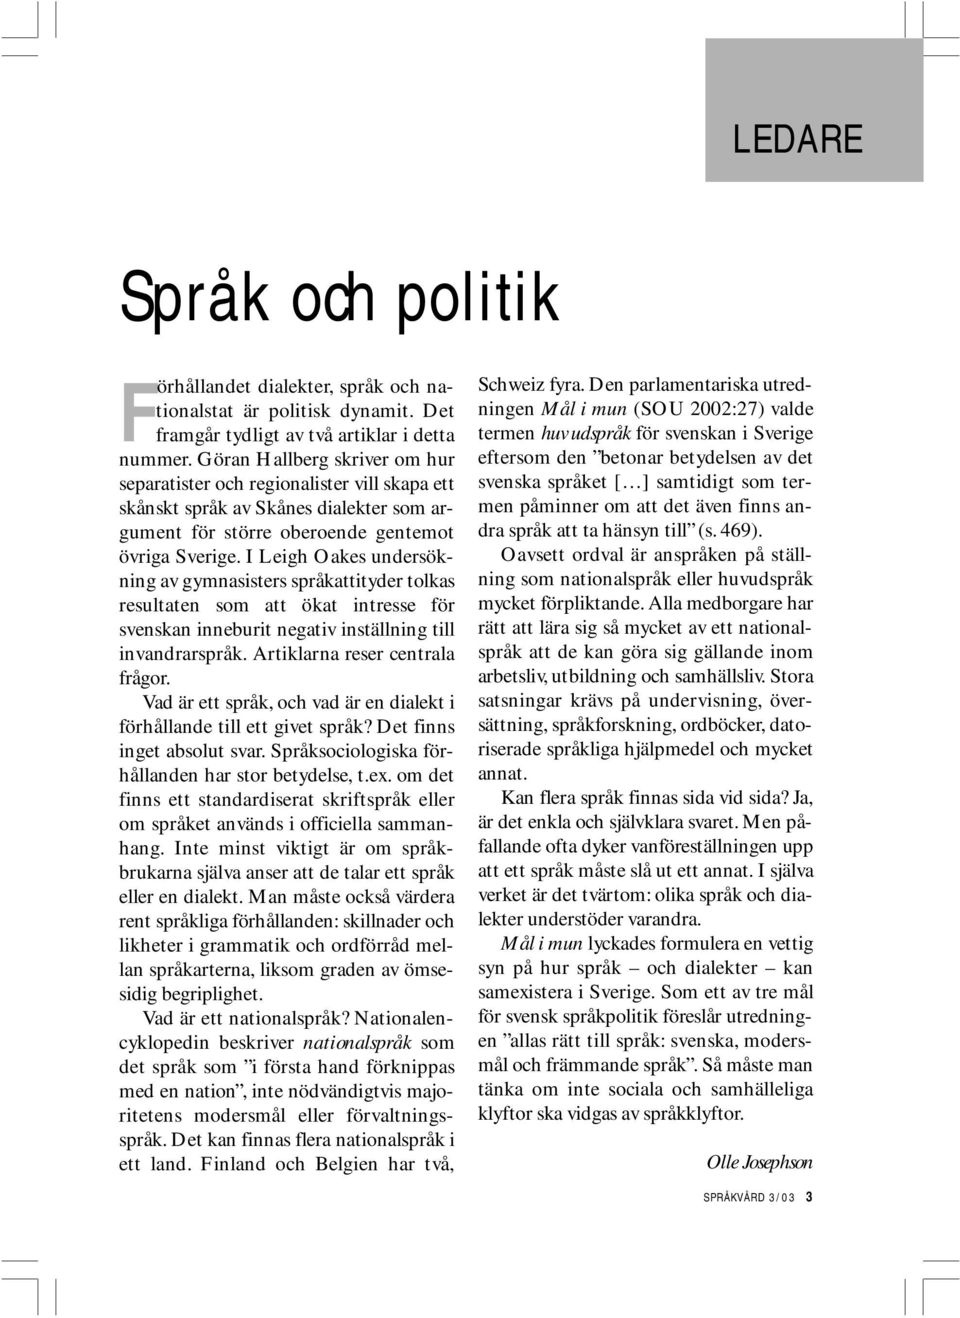 I Leigh Oakes undersökning av gymnasisters språkattityder tolkas resultaten som att ökat intresse för svenskan inneburit negativ inställning till invandrarspråk. Artiklarna reser centrala frågor.